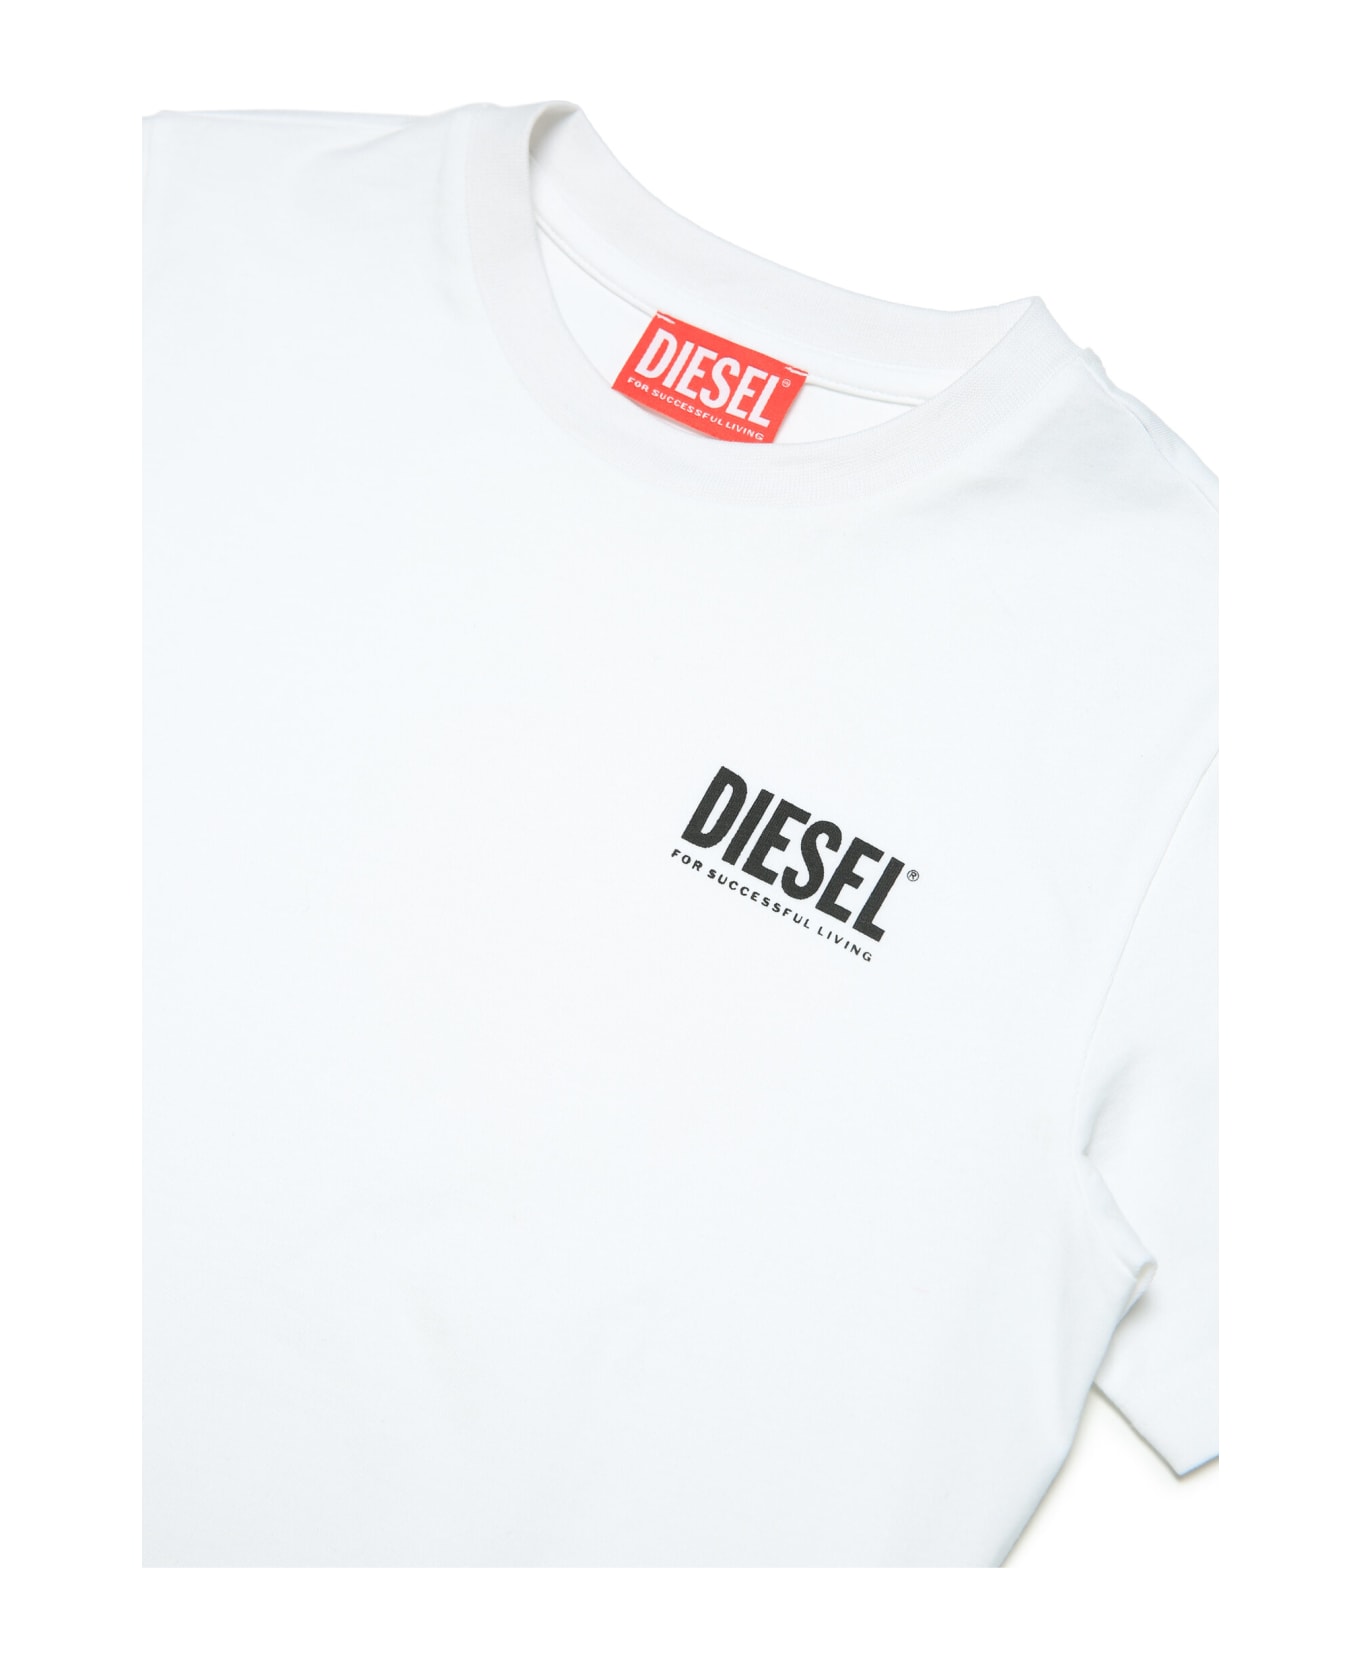 Diesel Utier Uw T-shirt Diesel - White